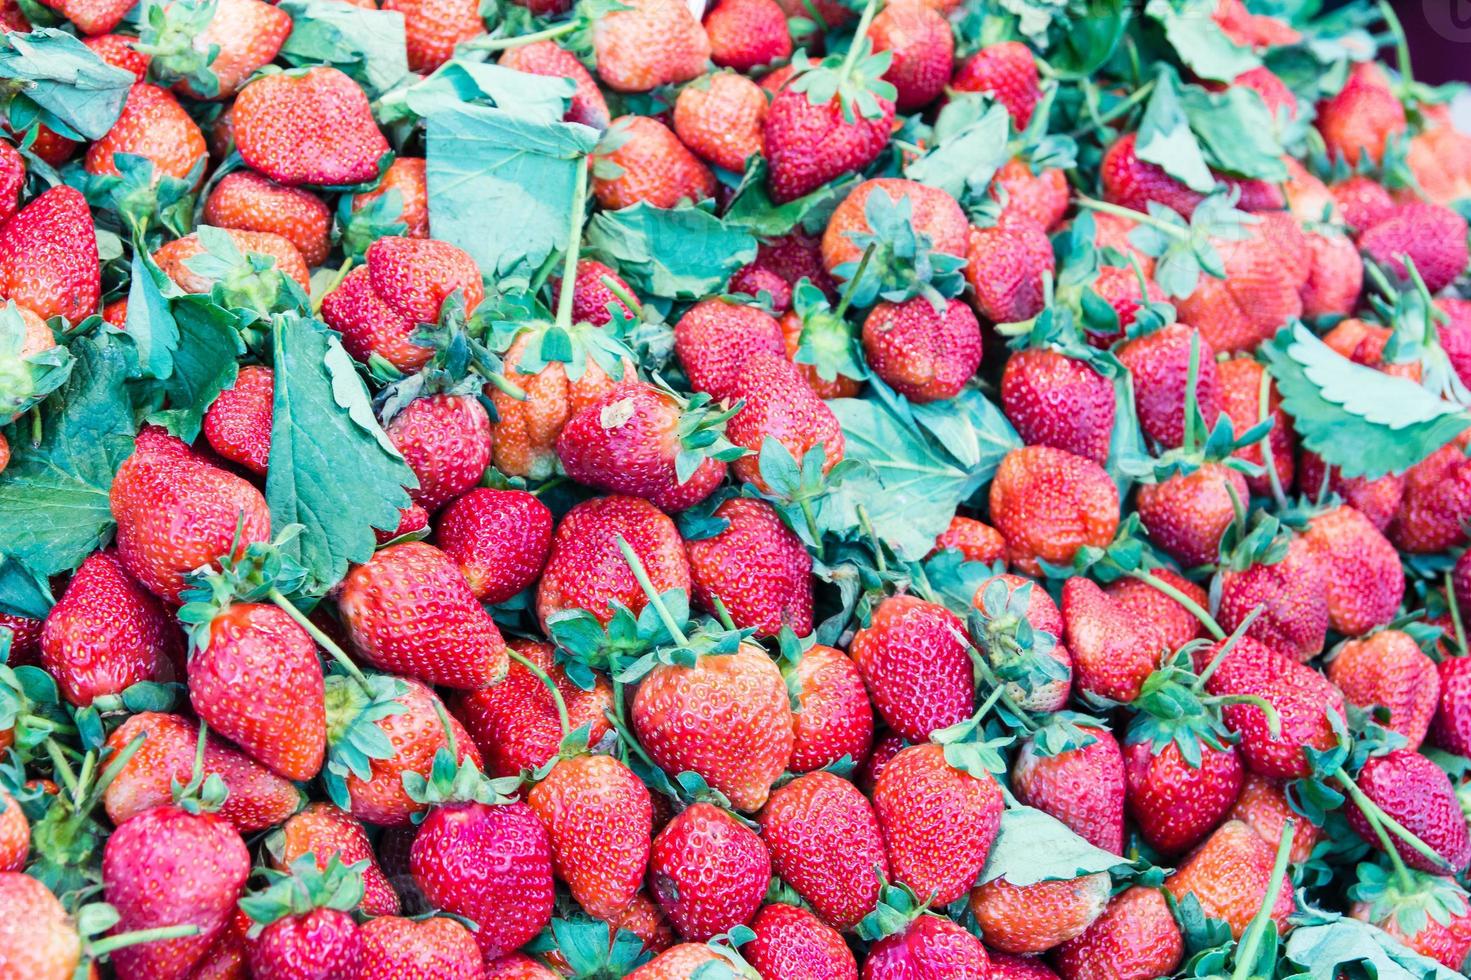 tas de fraises rouges au marché photo